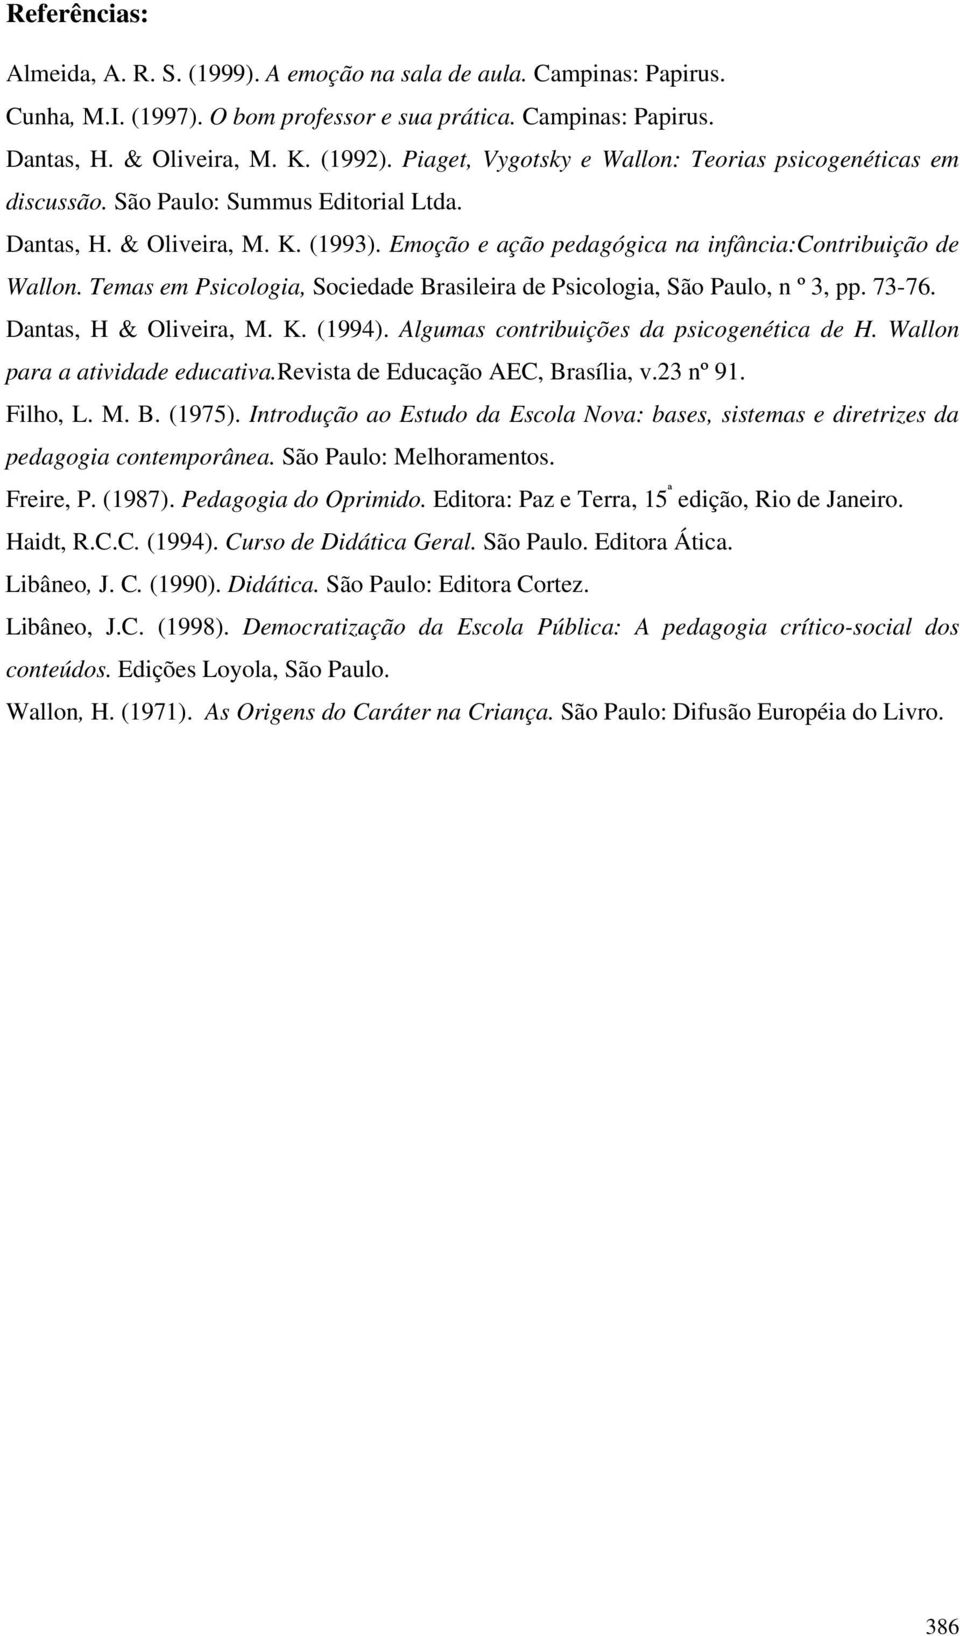 Temas em Psicologia, Sociedade Brasileira de Psicologia, São Paulo, n º 3, pp. 73-76. Dantas, H & Oliveira, M. K. (1994). Algumas contribuições da psicogenética de H.